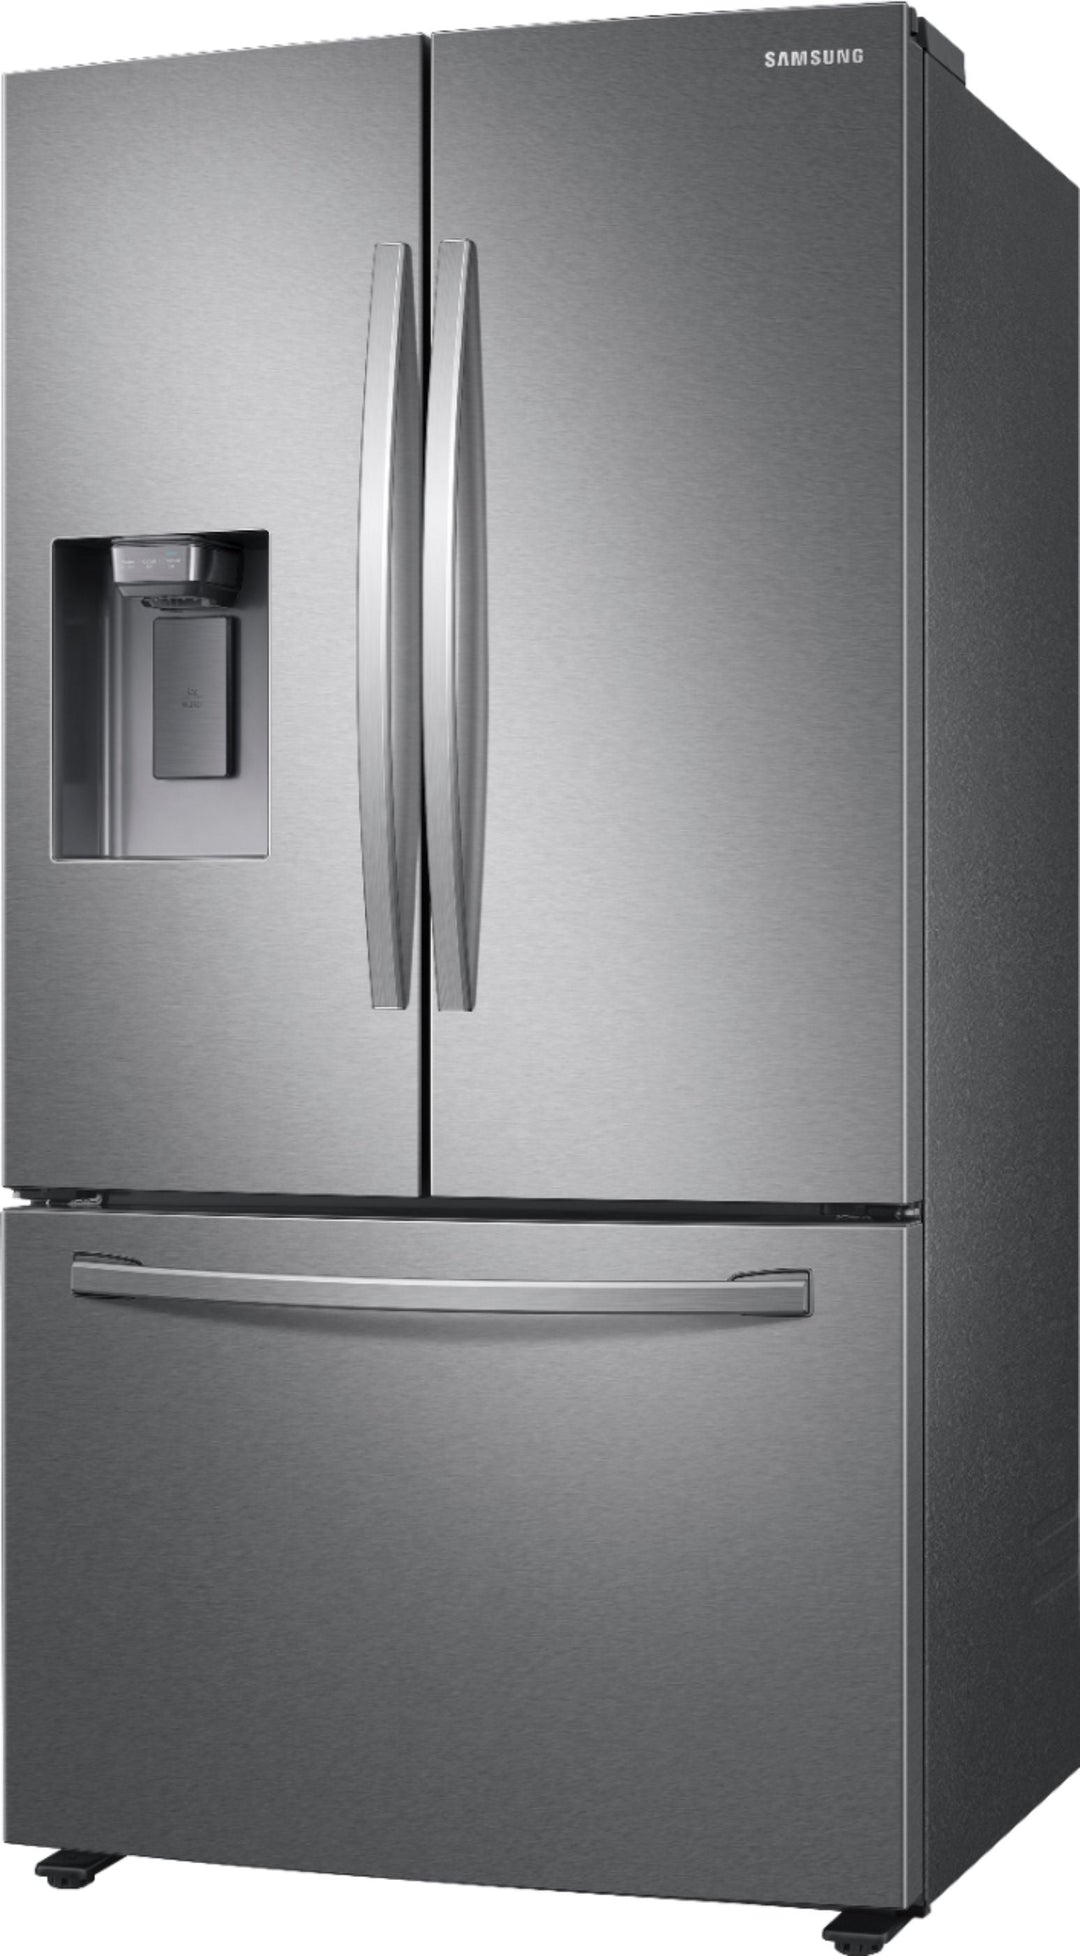 Samsung - 27 cu. ft. 3-Door French Door Refrigerator with External Water & Ice Dispenser - Stainless Steel